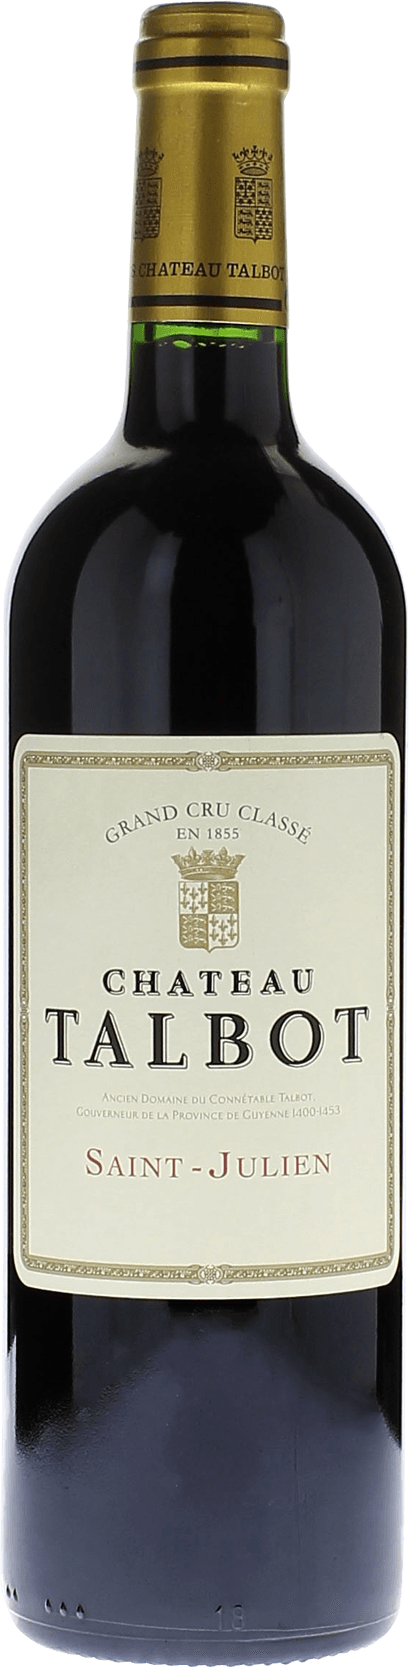 Talbot 1993 4me Grand cru class Saint-Julien, Bordeaux rouge